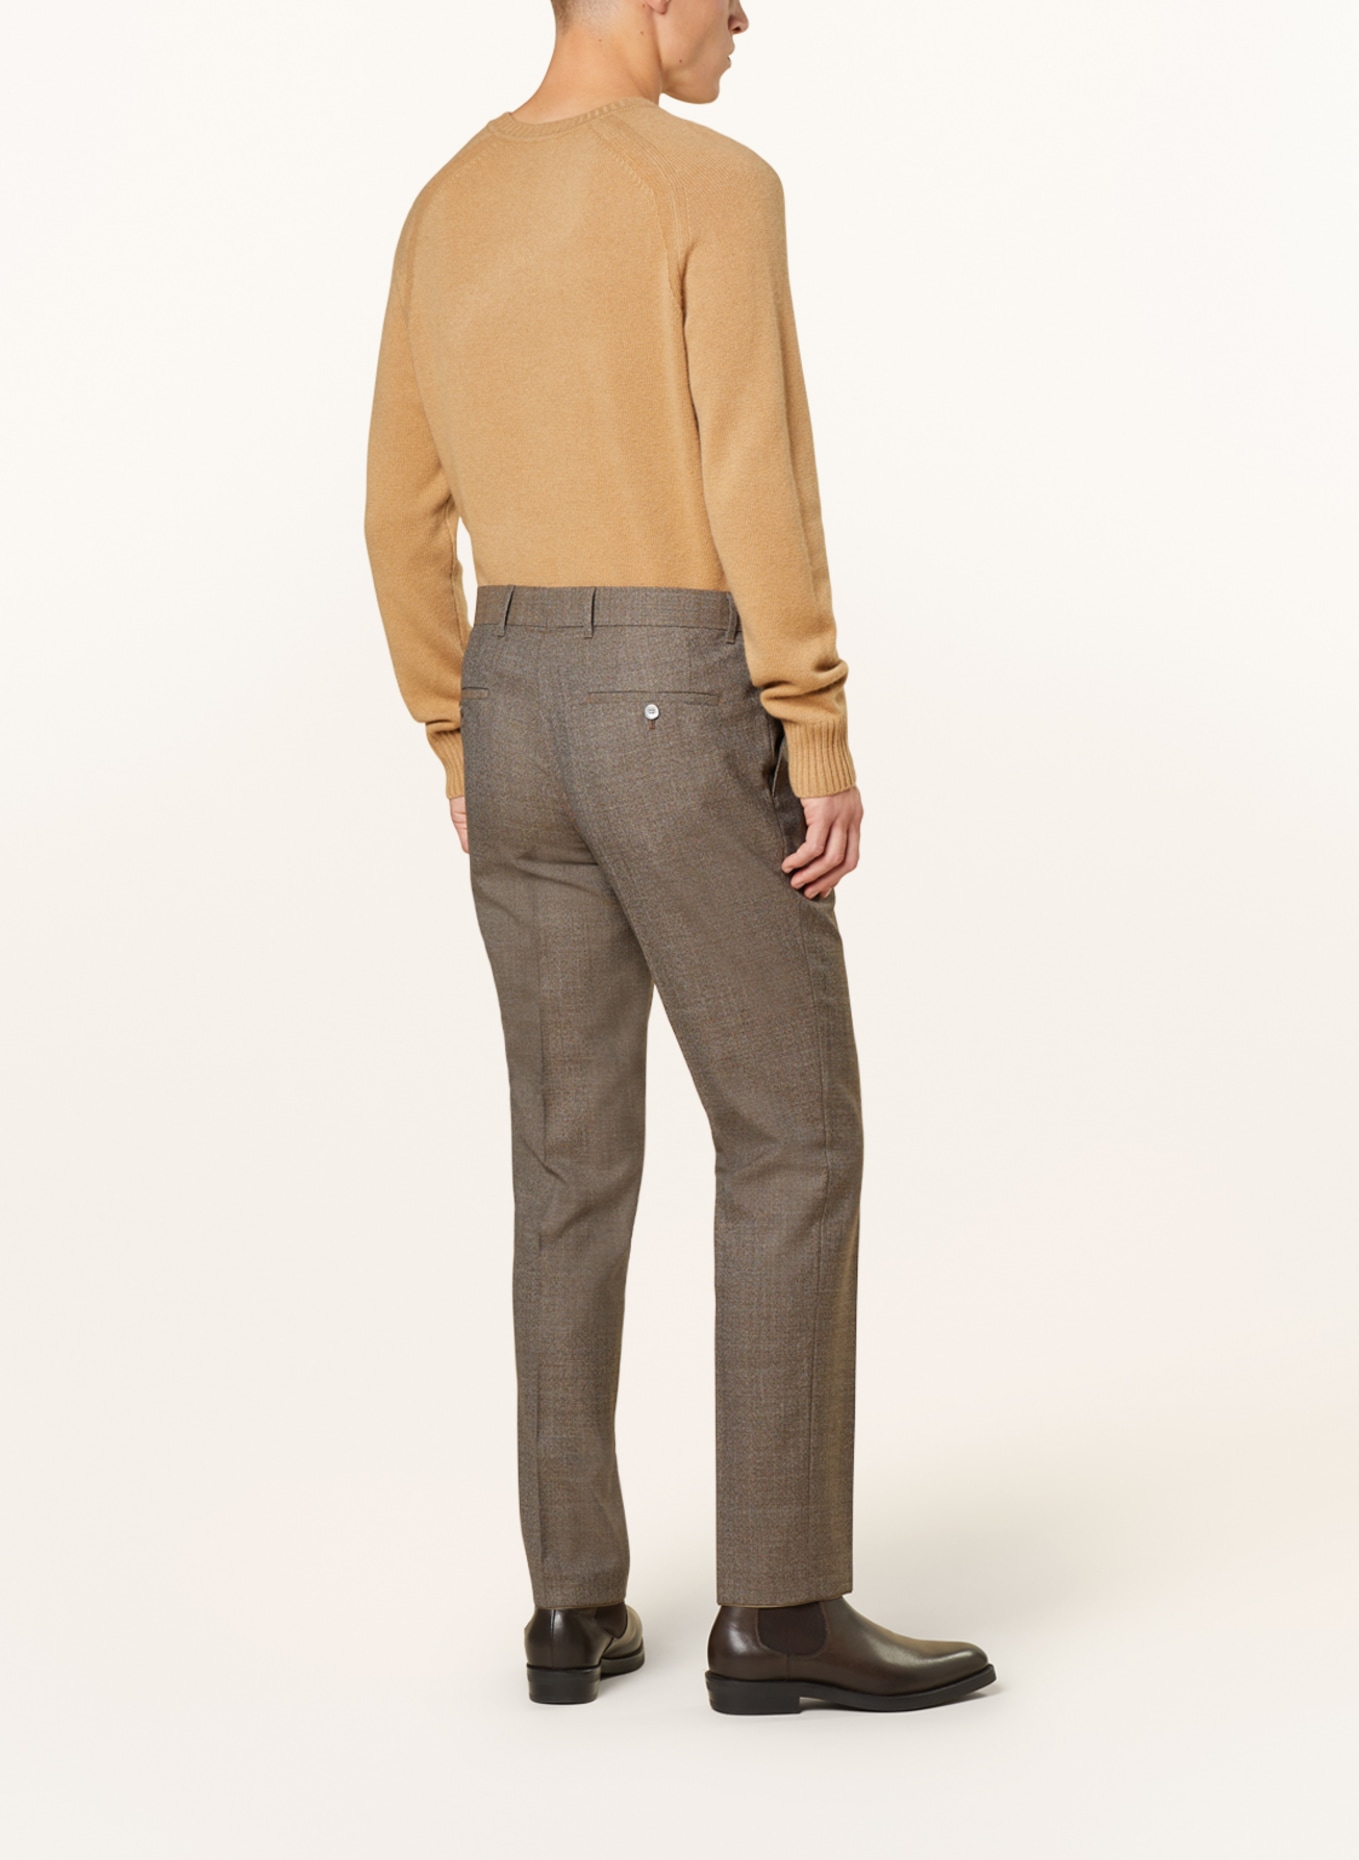 Hugo Boss Kaito-1 Beige Slim Fit Chino Trousers | eBay